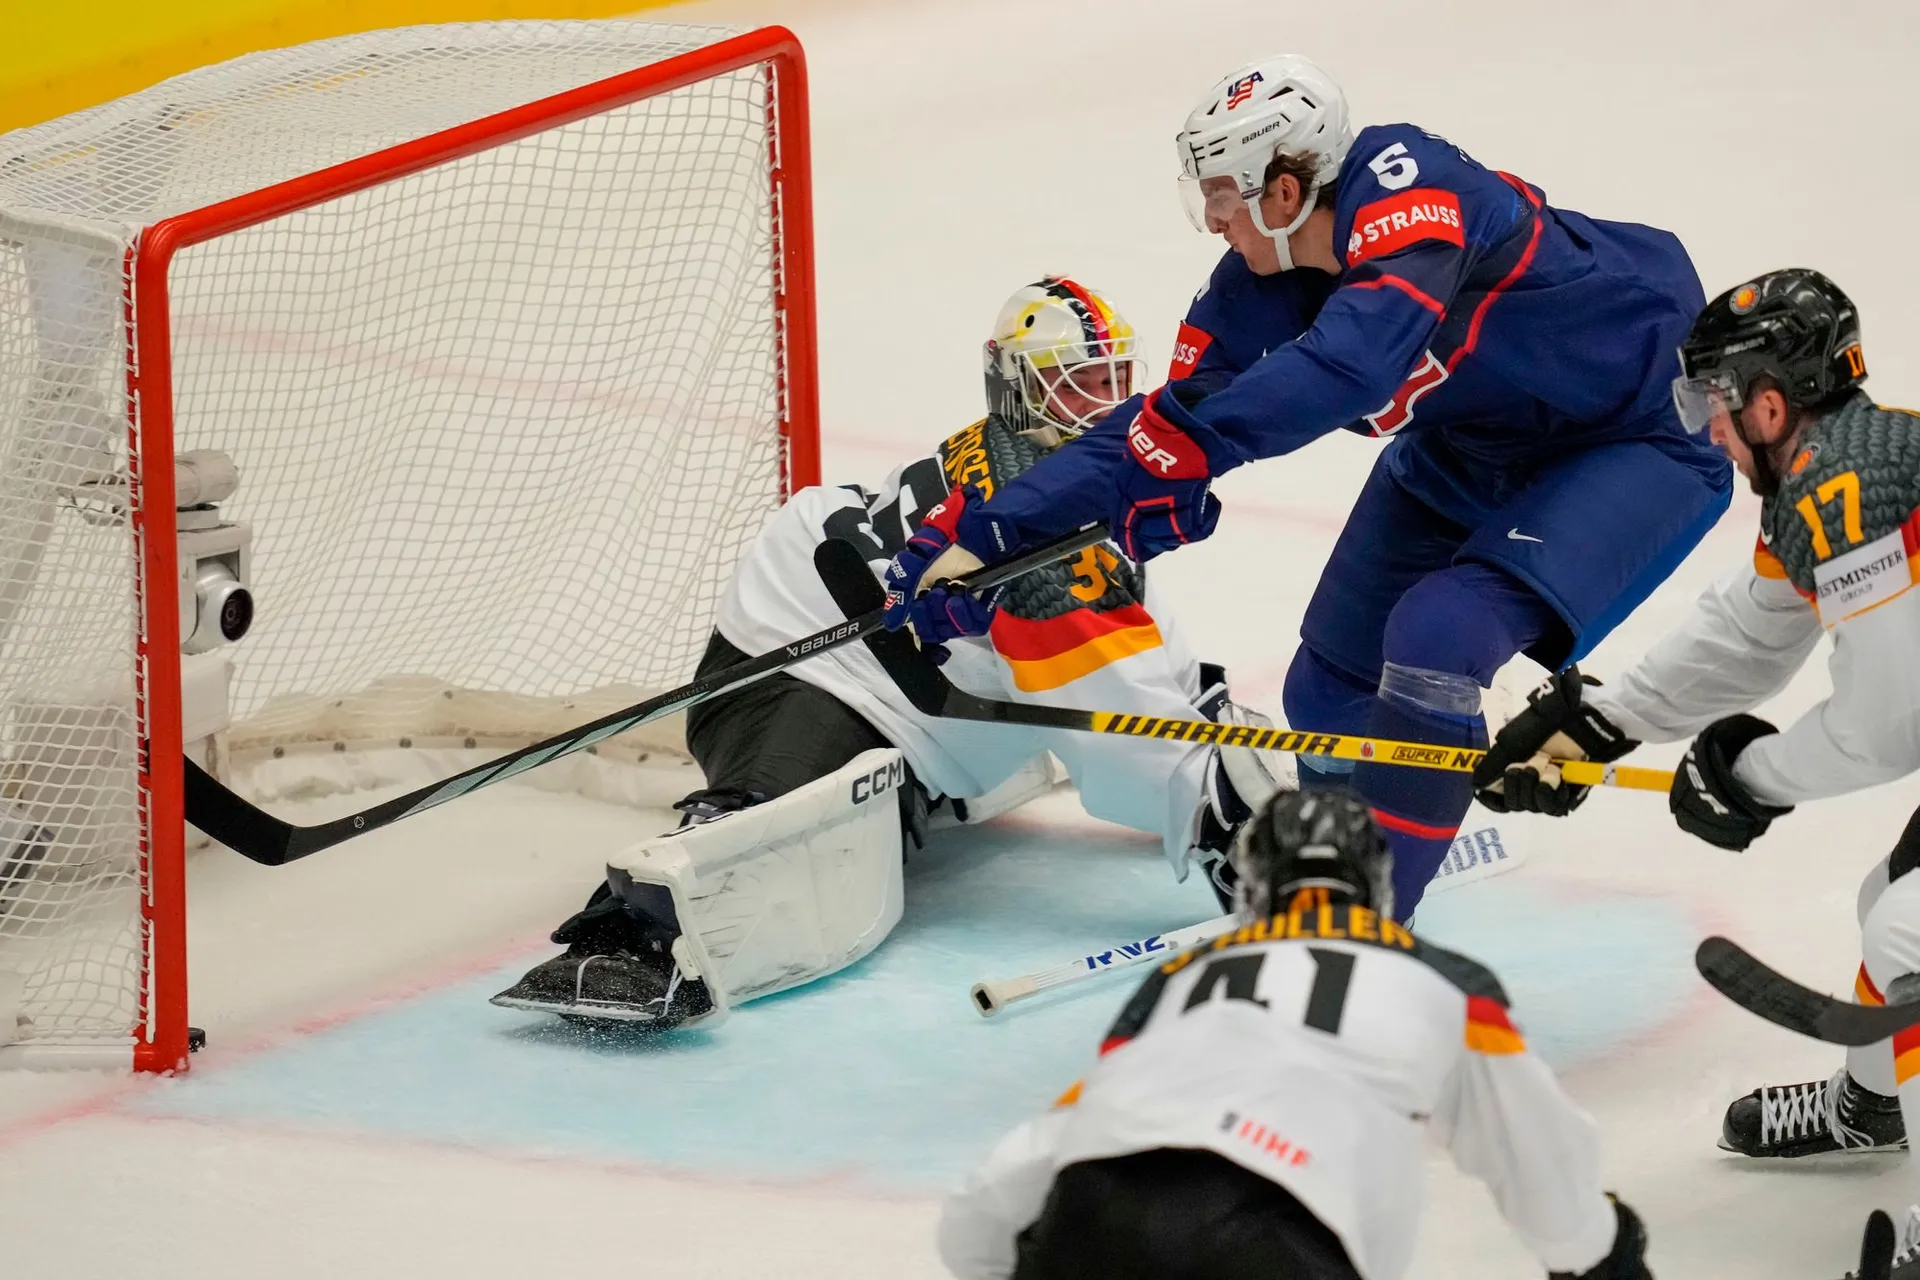 czech-republic-ice-hockey-worlds322309.j